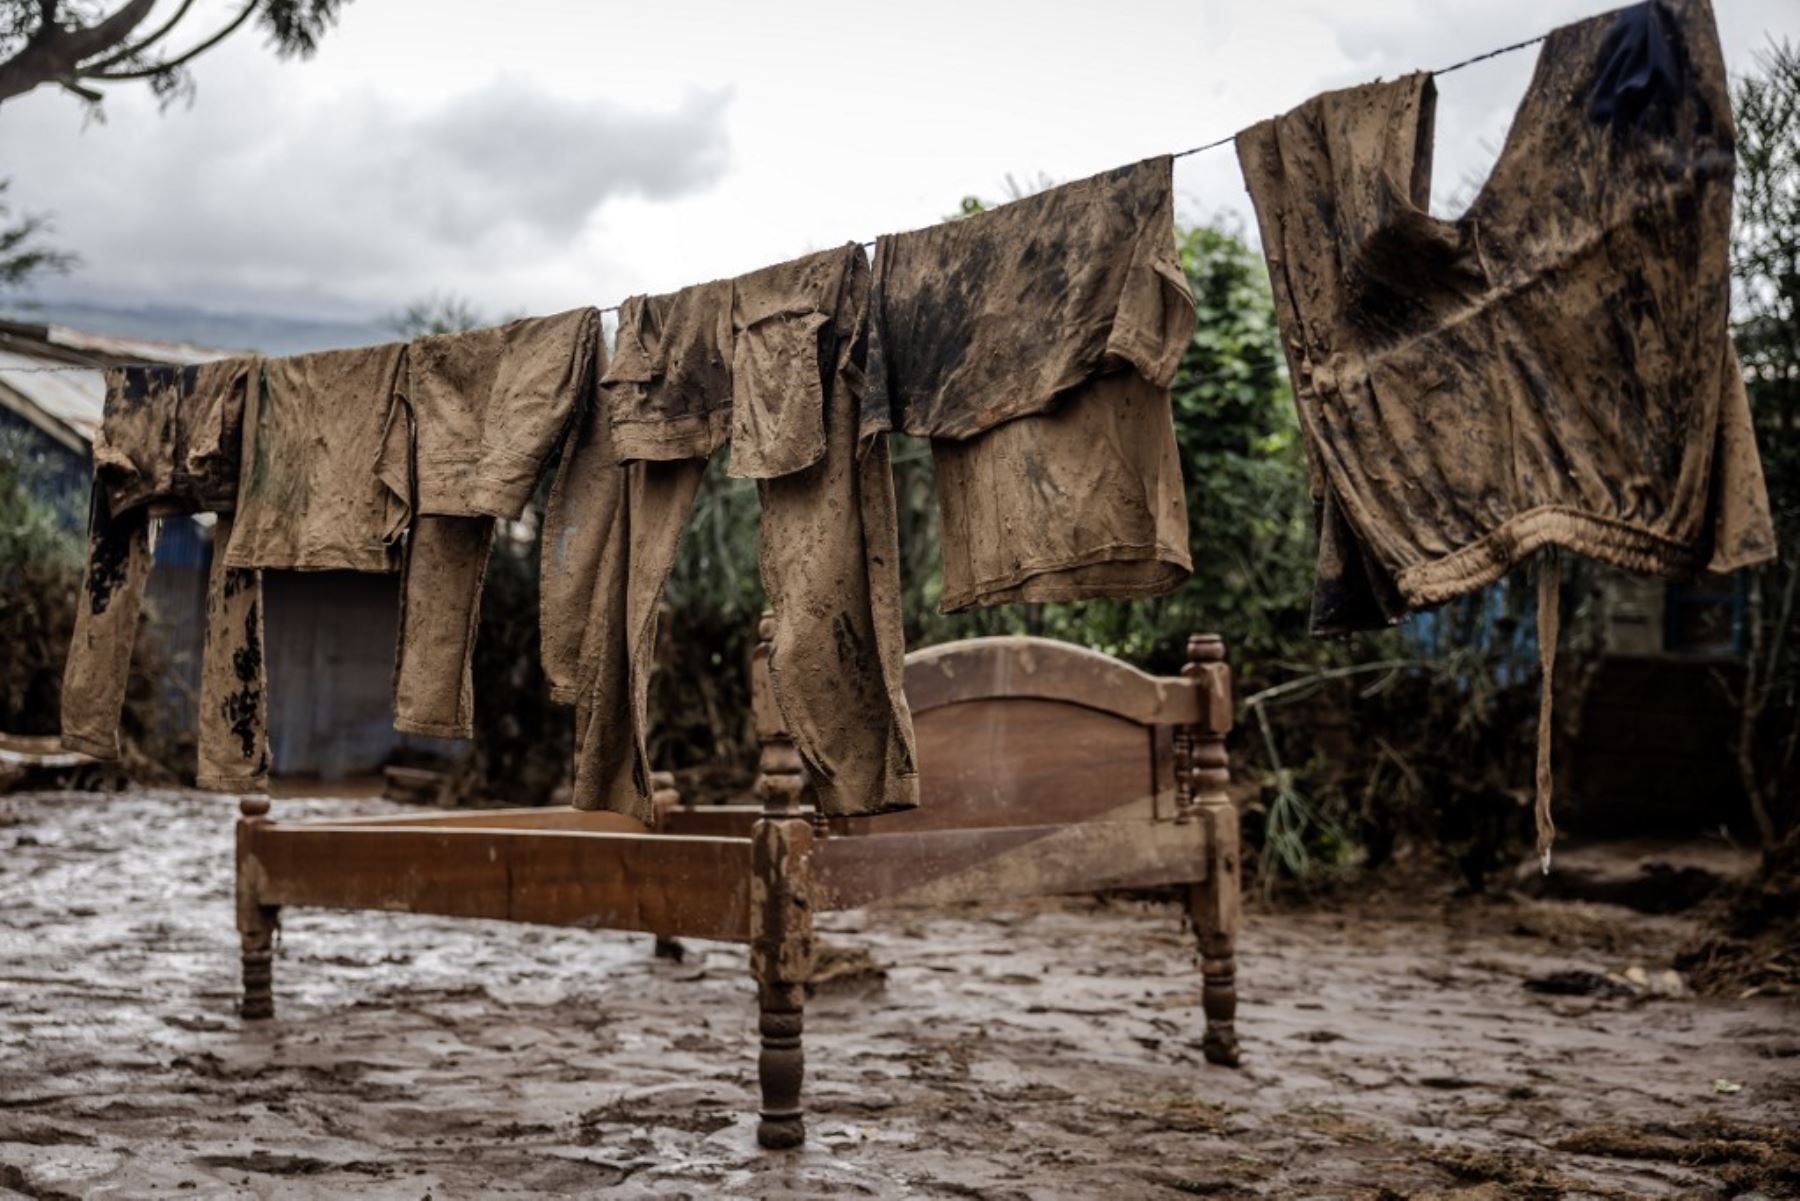 Al menos 42 personas murieron al romperse una represa en una localidad al norte de Nairobi, la capital de Kenia. Foto: AFP